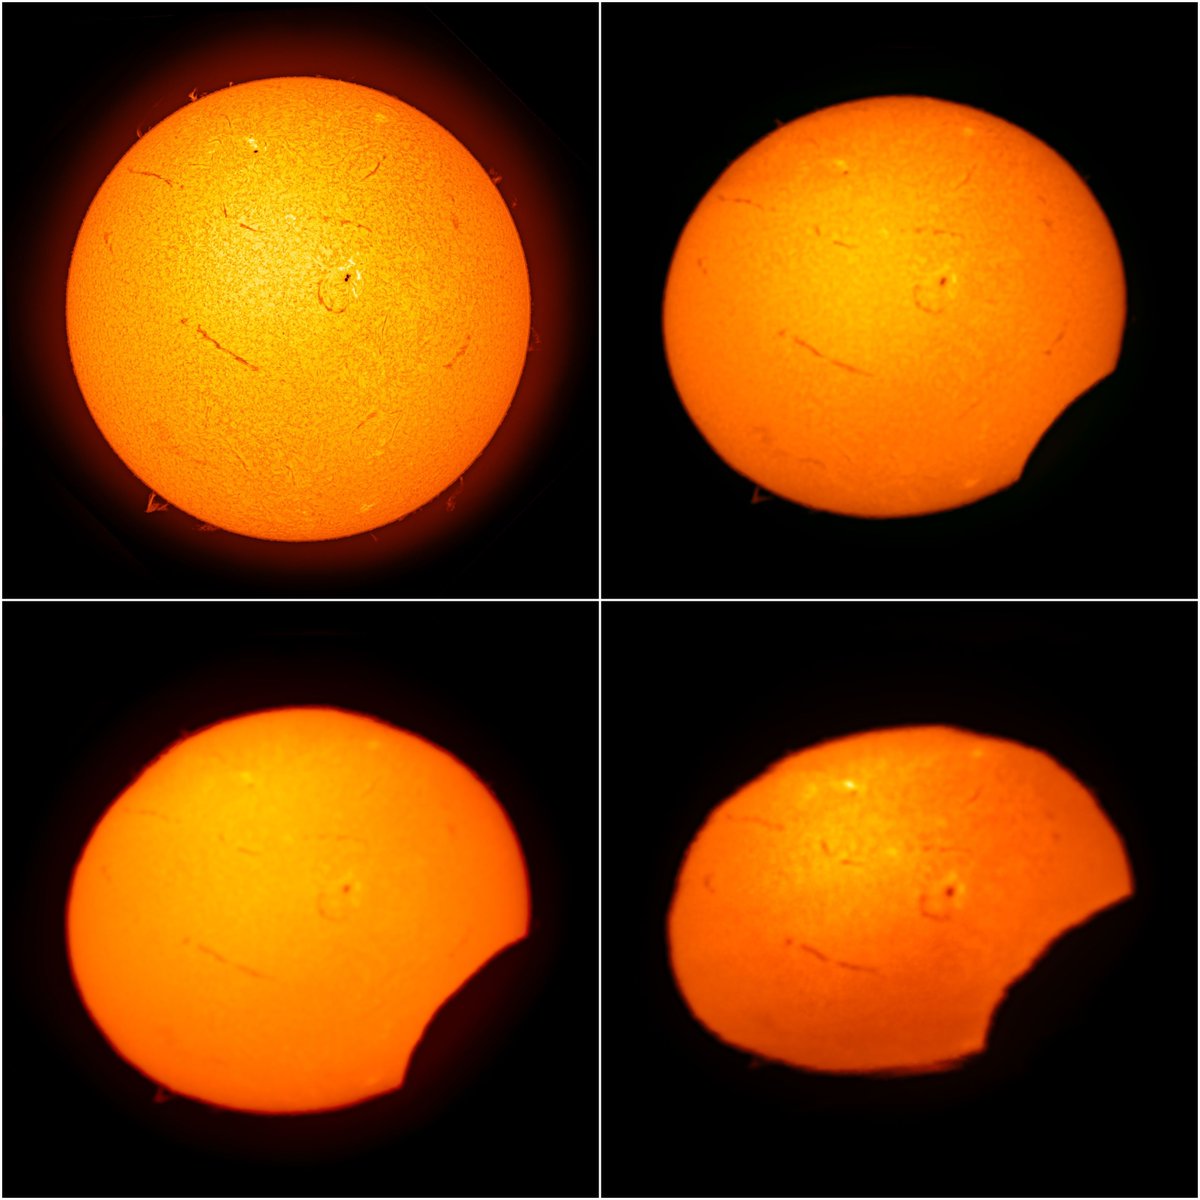 📸Observación del #eclipse del día 8 de abril desde el #ObservatoriodelTeide con un telescopio solar de 10 cm y filtro Ha. Vemos la “mordida”, del 1%, 4% y 8% del disco, así como su achatamiento por la refracción de la luz de la atmósfera terrestre. ©️D. López/A. Rosenberg/IAC